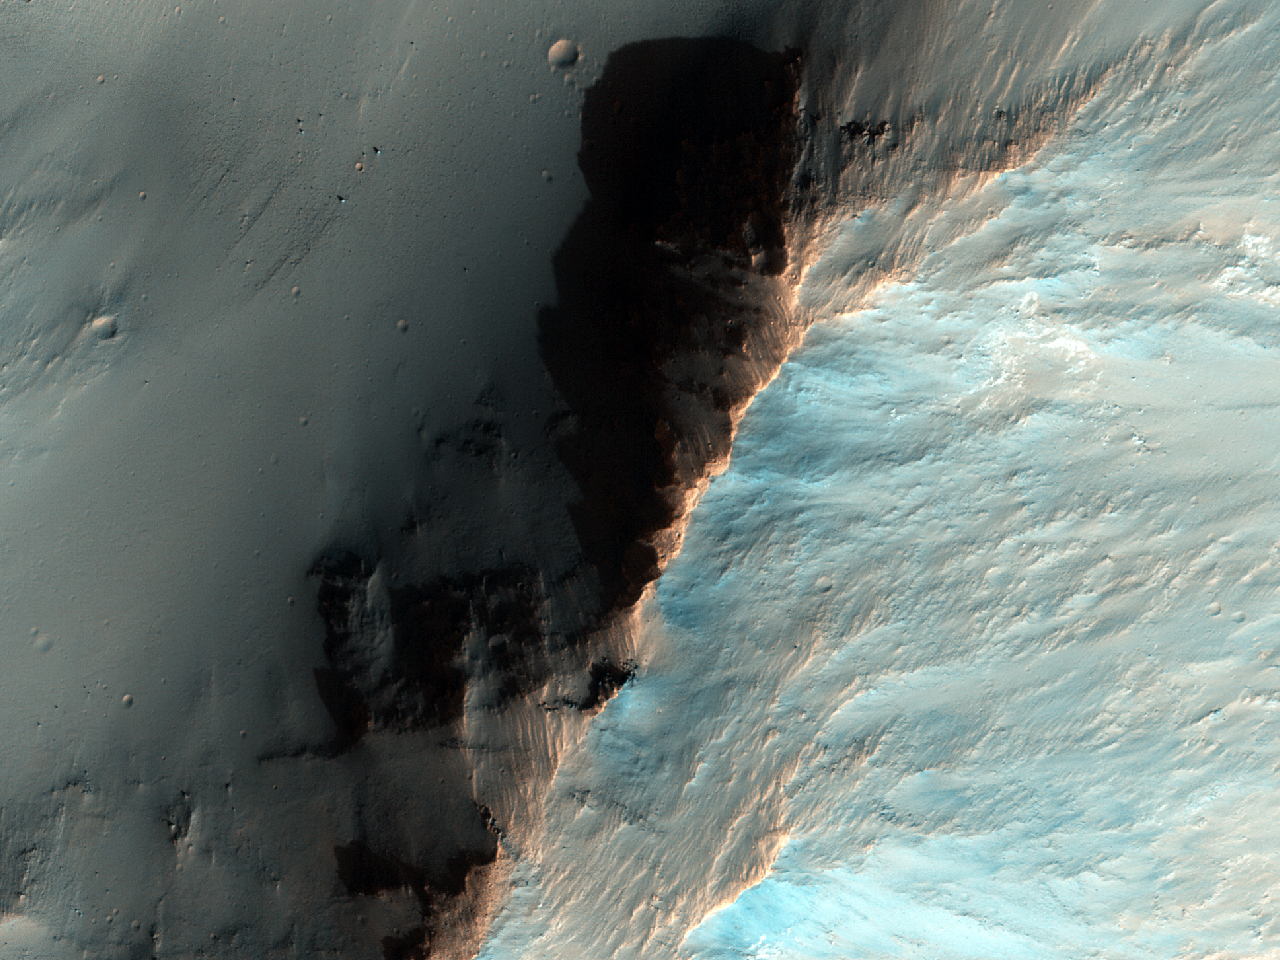 سنگ برش در « کوپریتس چزما » (Coprates Chasma)